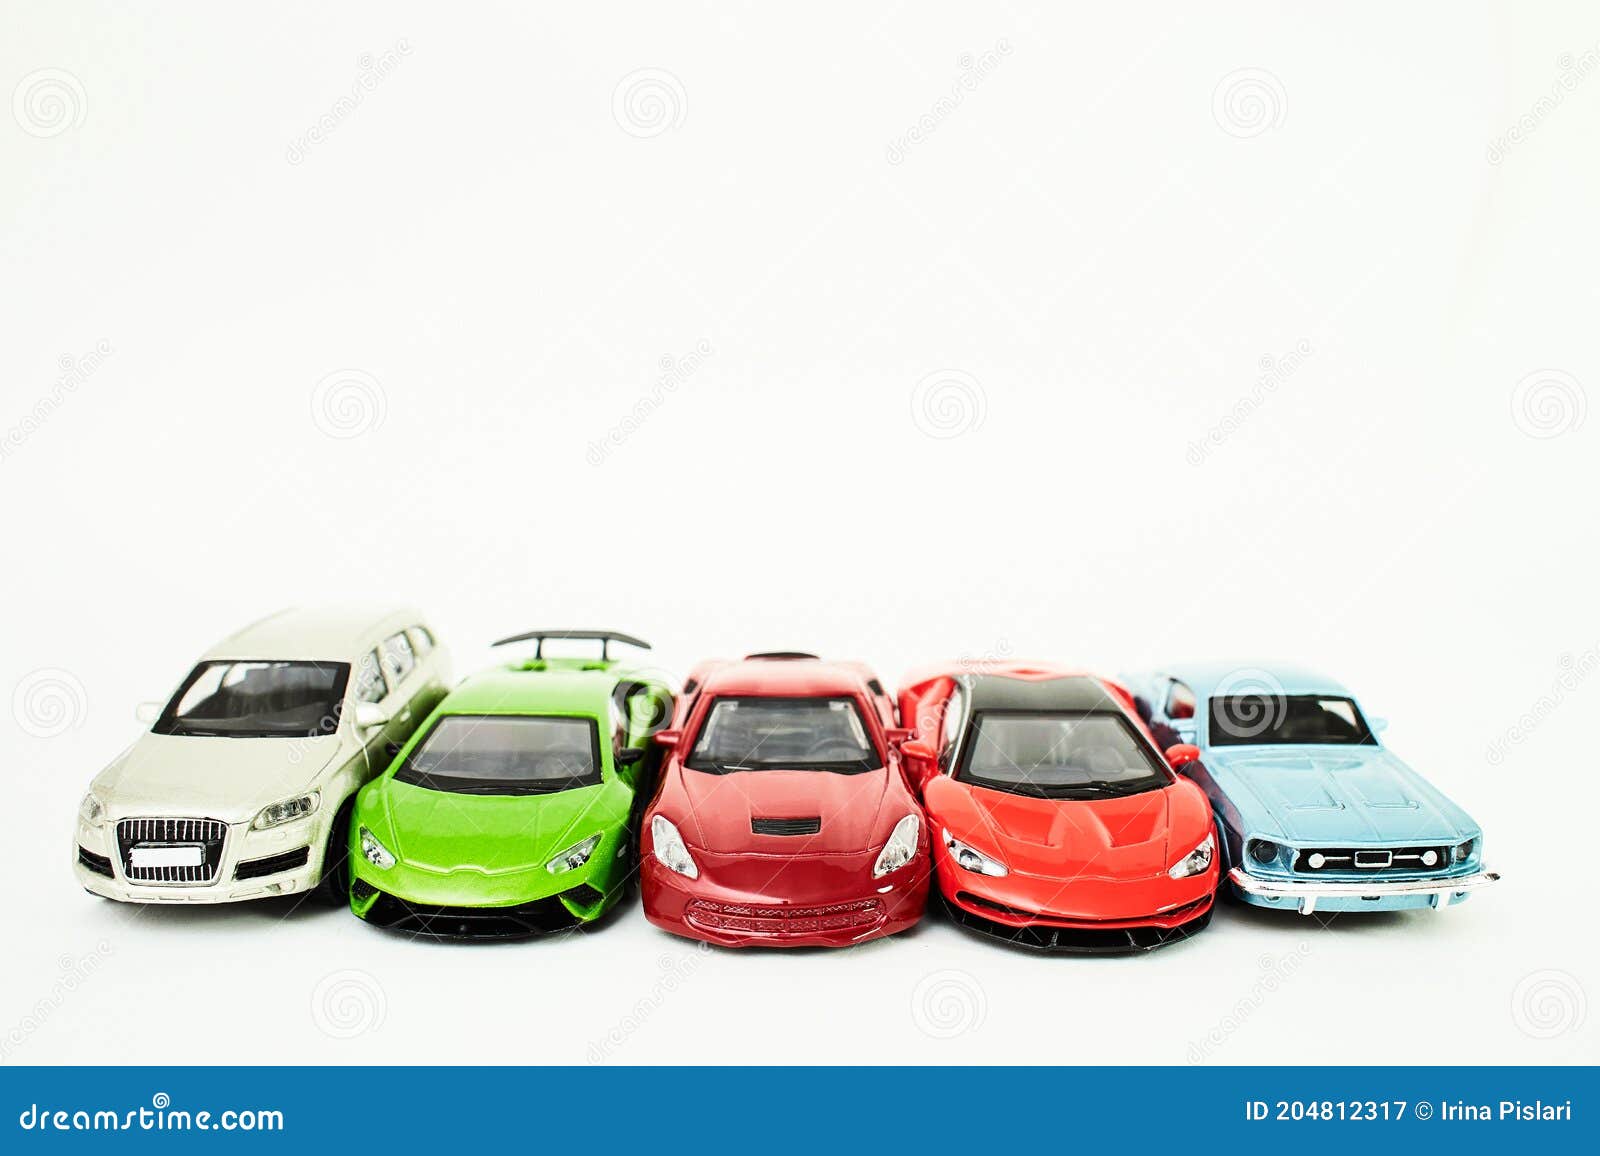 Deter Kent gastheer Speelgoedauto ' S Op Witte Achtergrond Stock Afbeelding - Image of stijl,  cirkel: 204812317